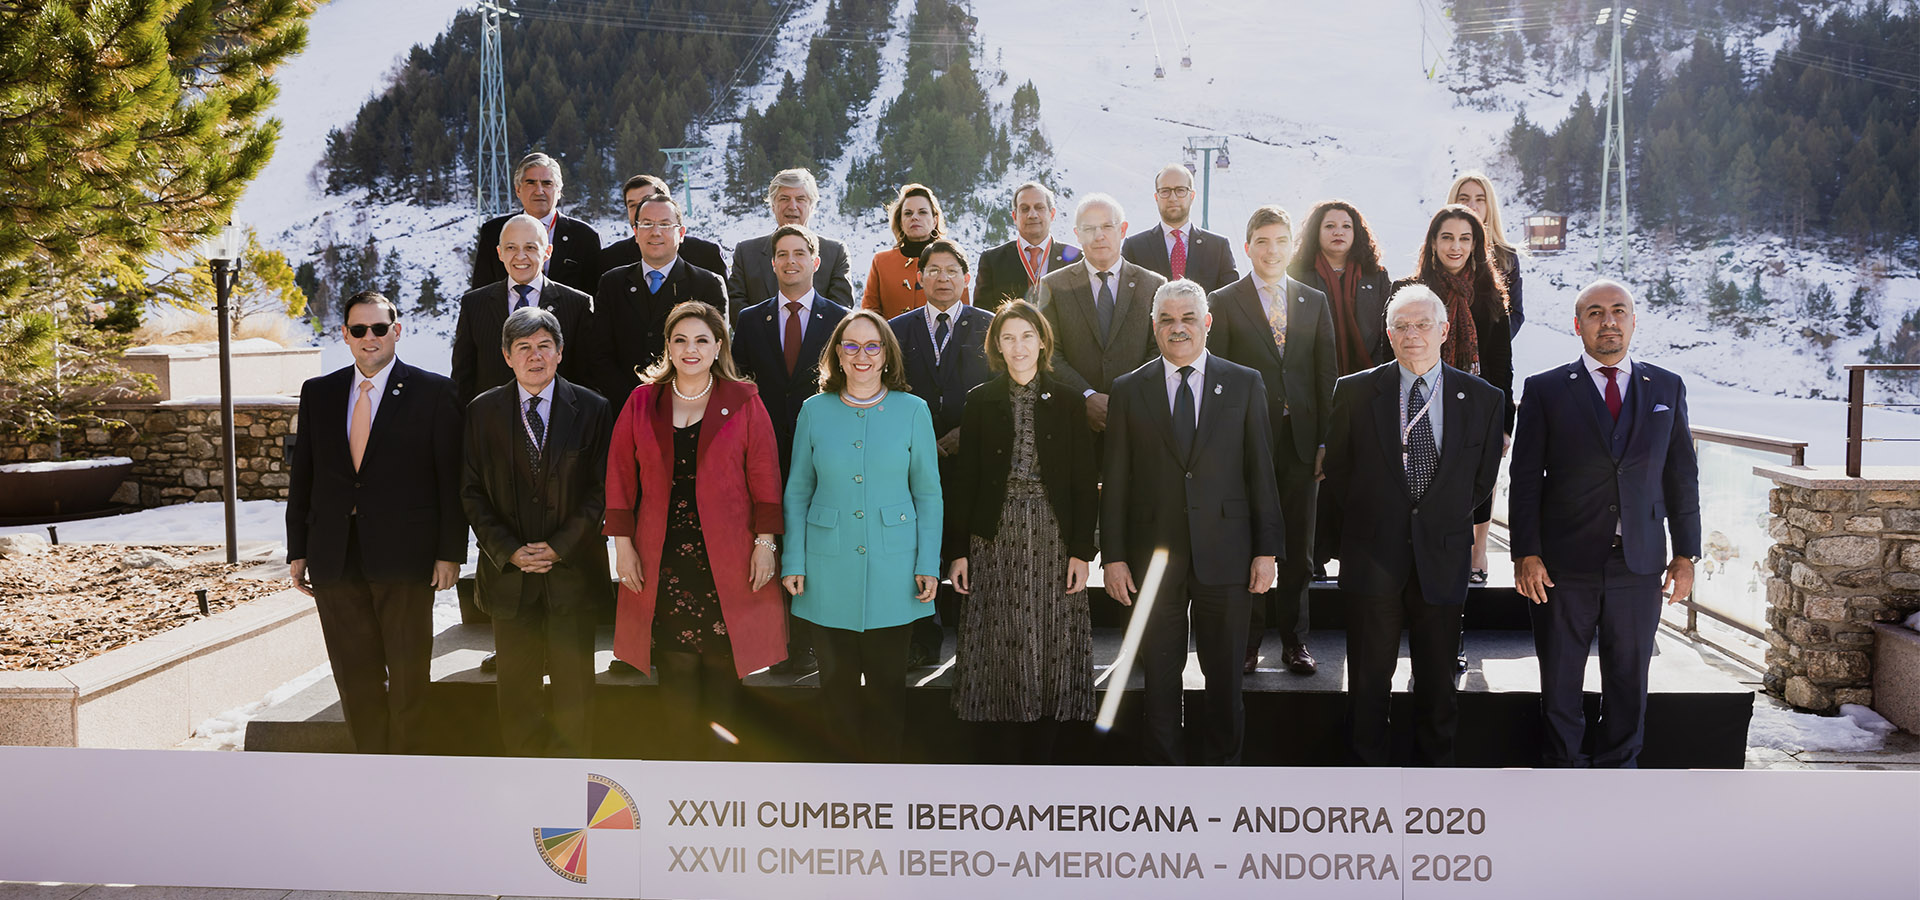 Cumbre Iberoamericana - Andorra 2020